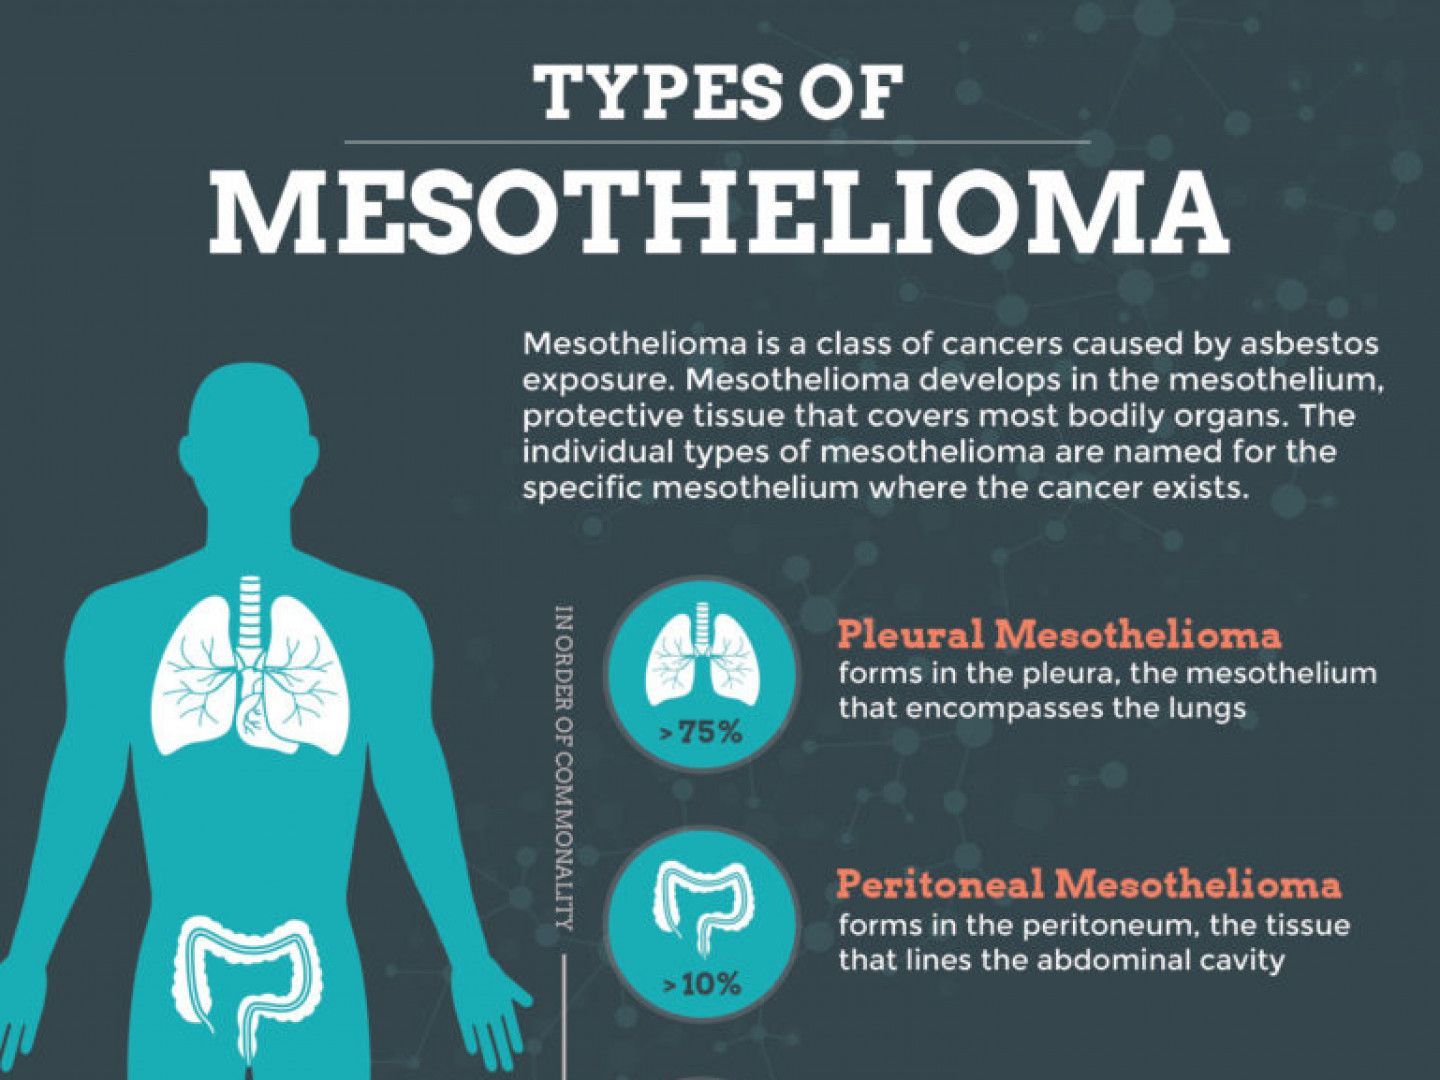 Types of Mesothelioma